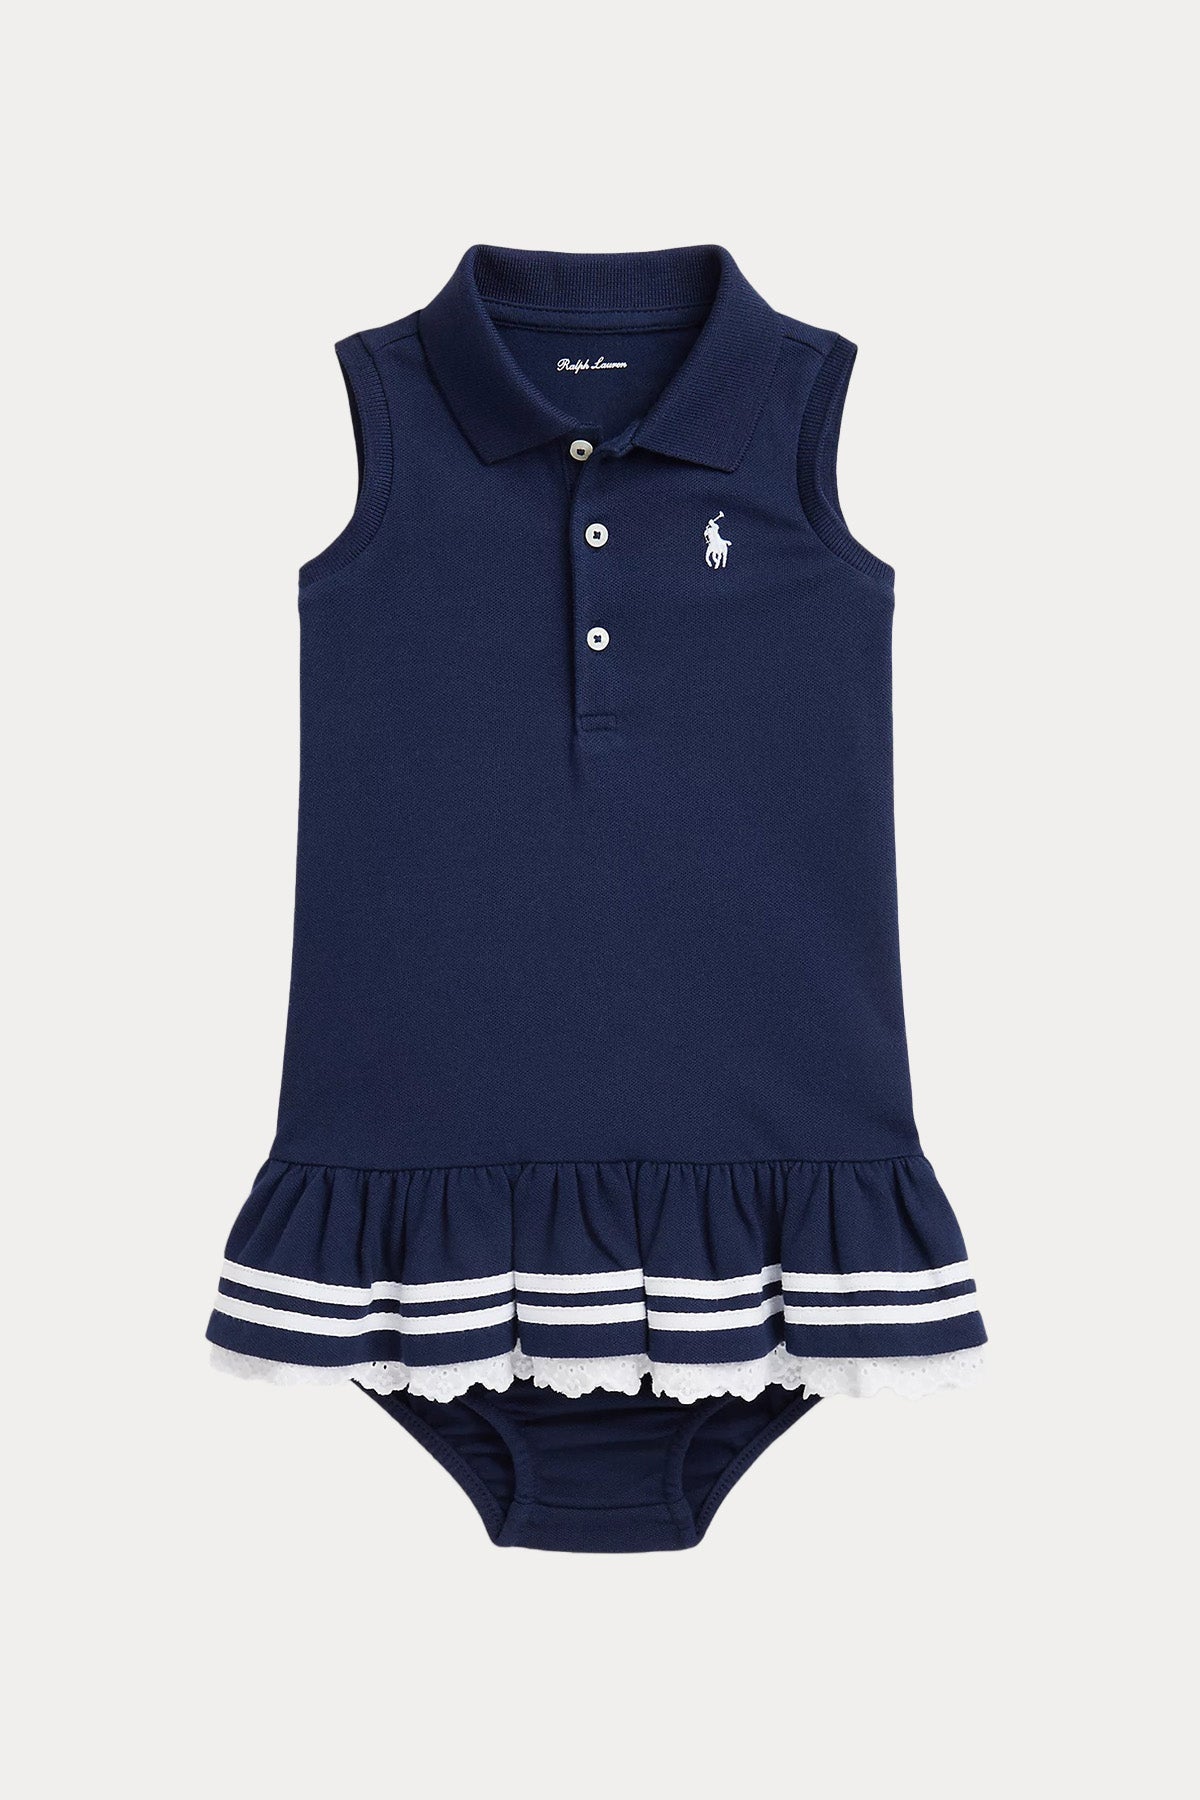 Polo Ralph Lauren Kids 12-24 Aylık Kız Bebek Şortlu Polo Yaka Elbise